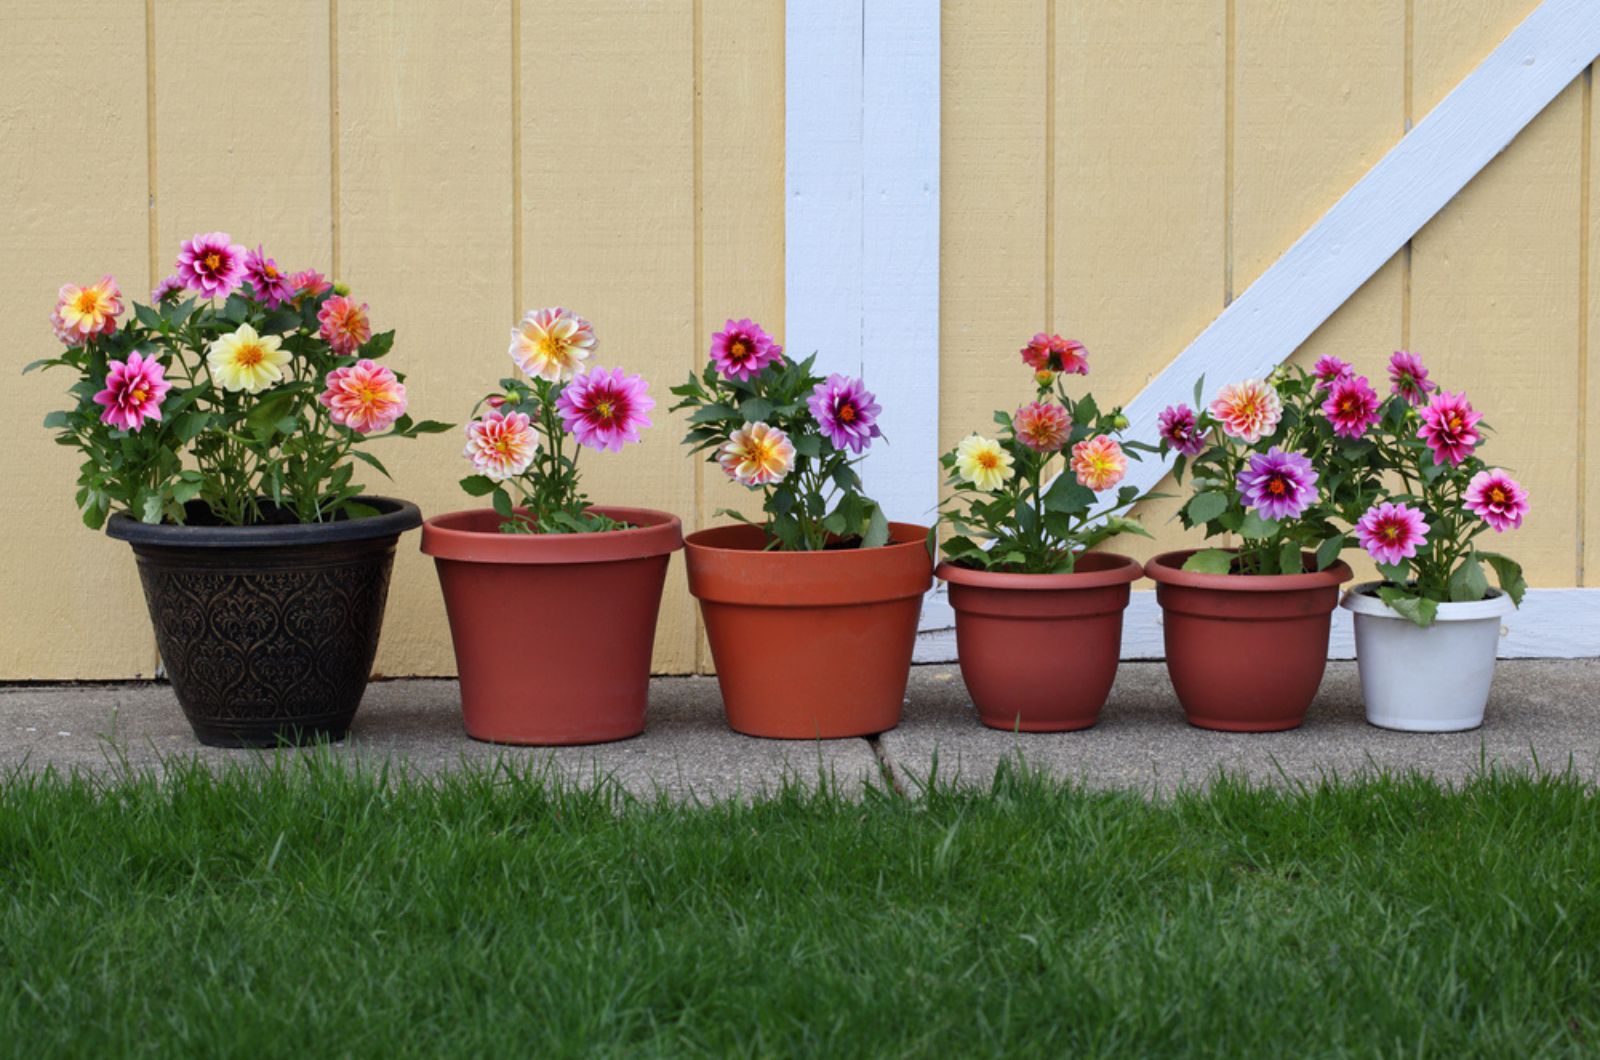 Dahlia flower planter row for natural background